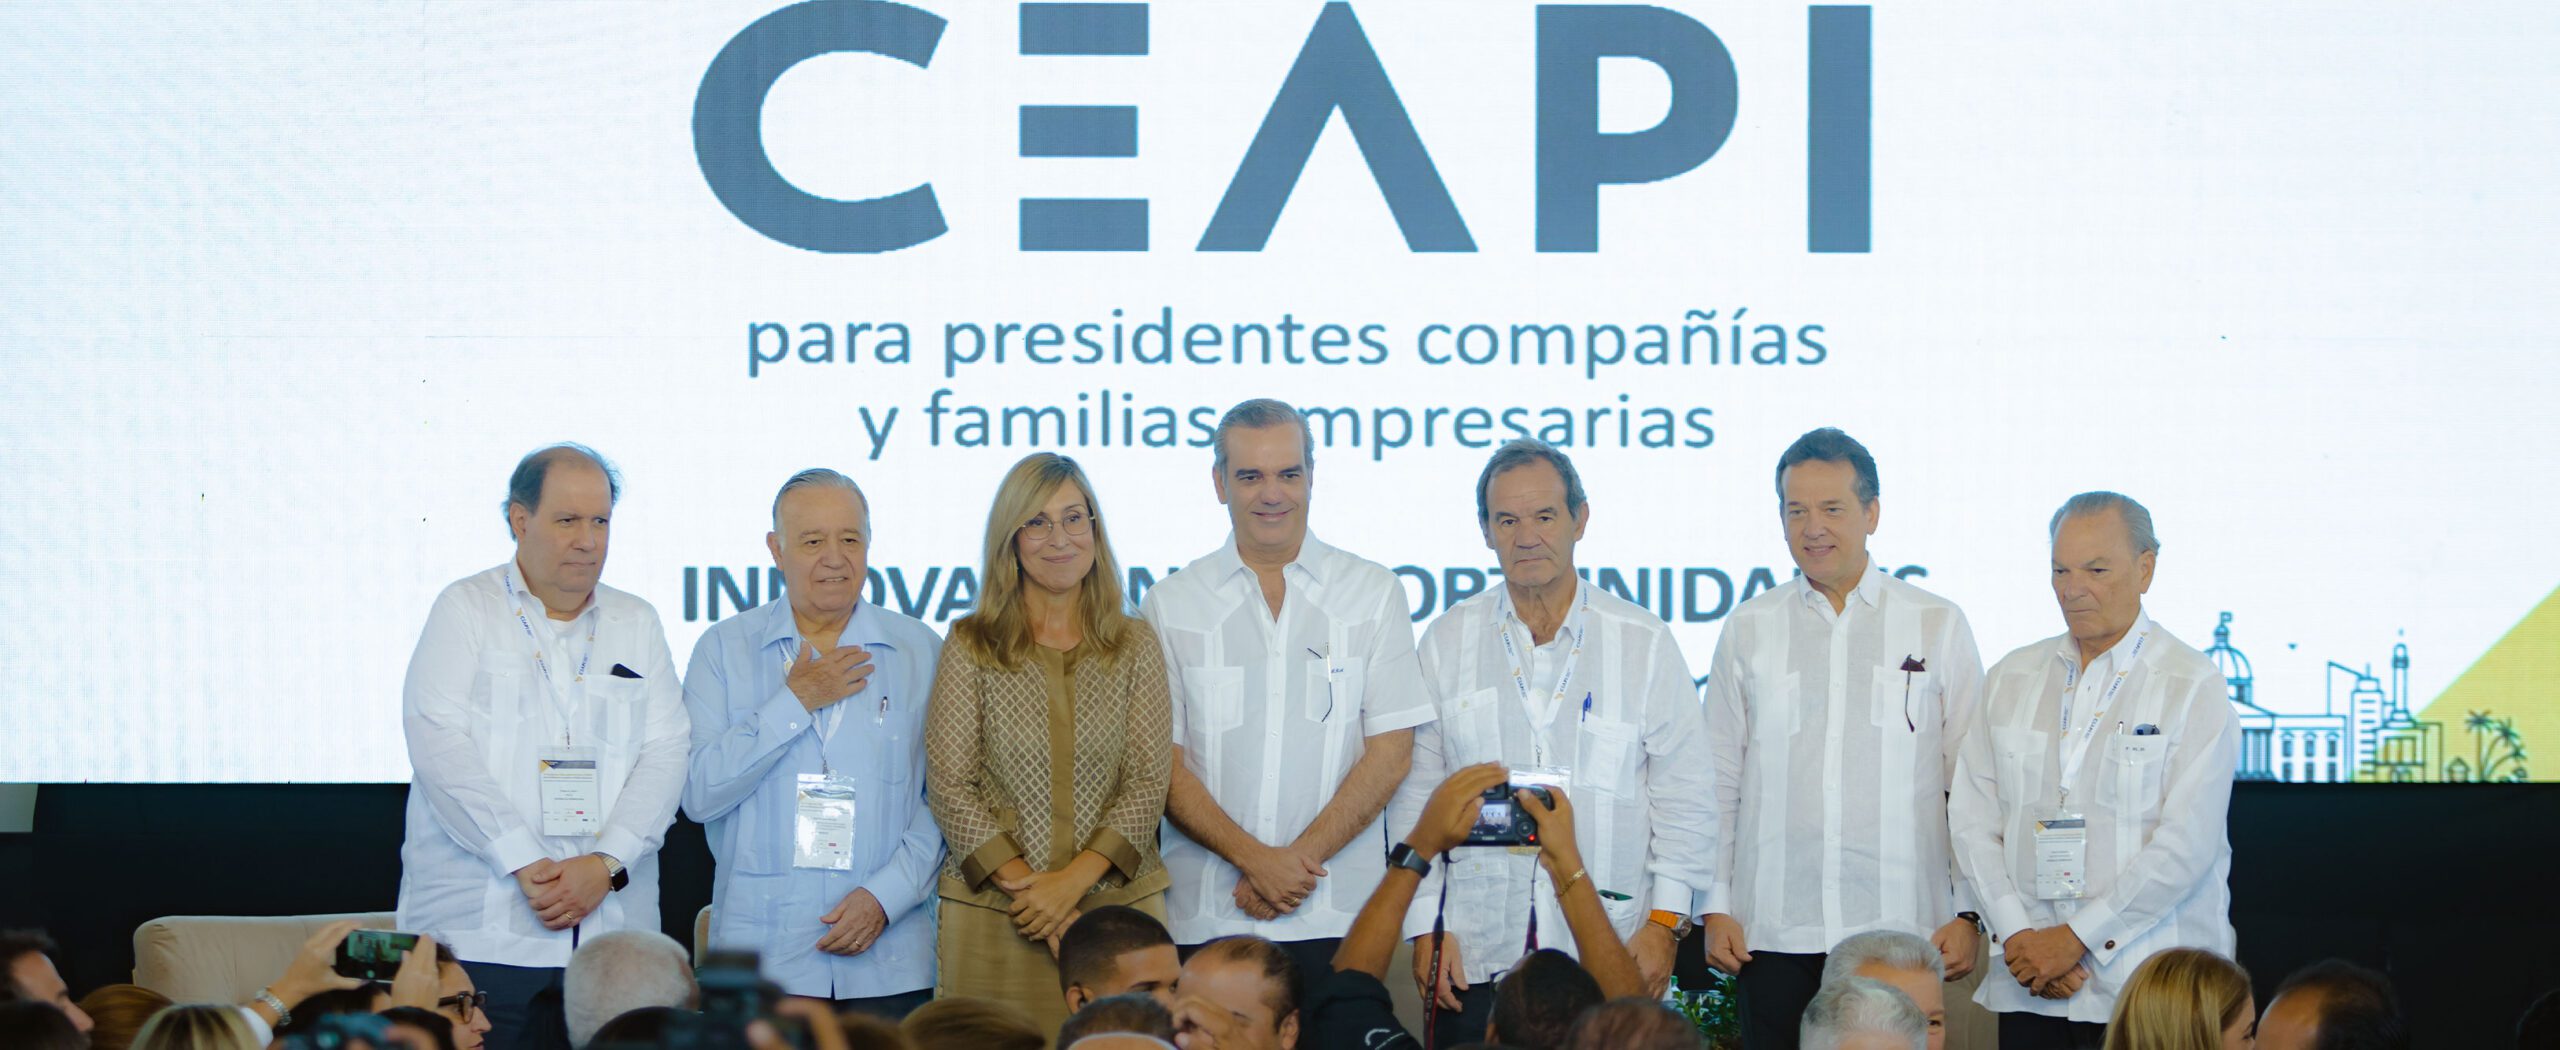 CEAPI reunirá en Madrid a los principales empresarios de la Comunidad Iberoamericana para reflexionar sobre el futuro de la economía y de la relación Latinoamérica-UE